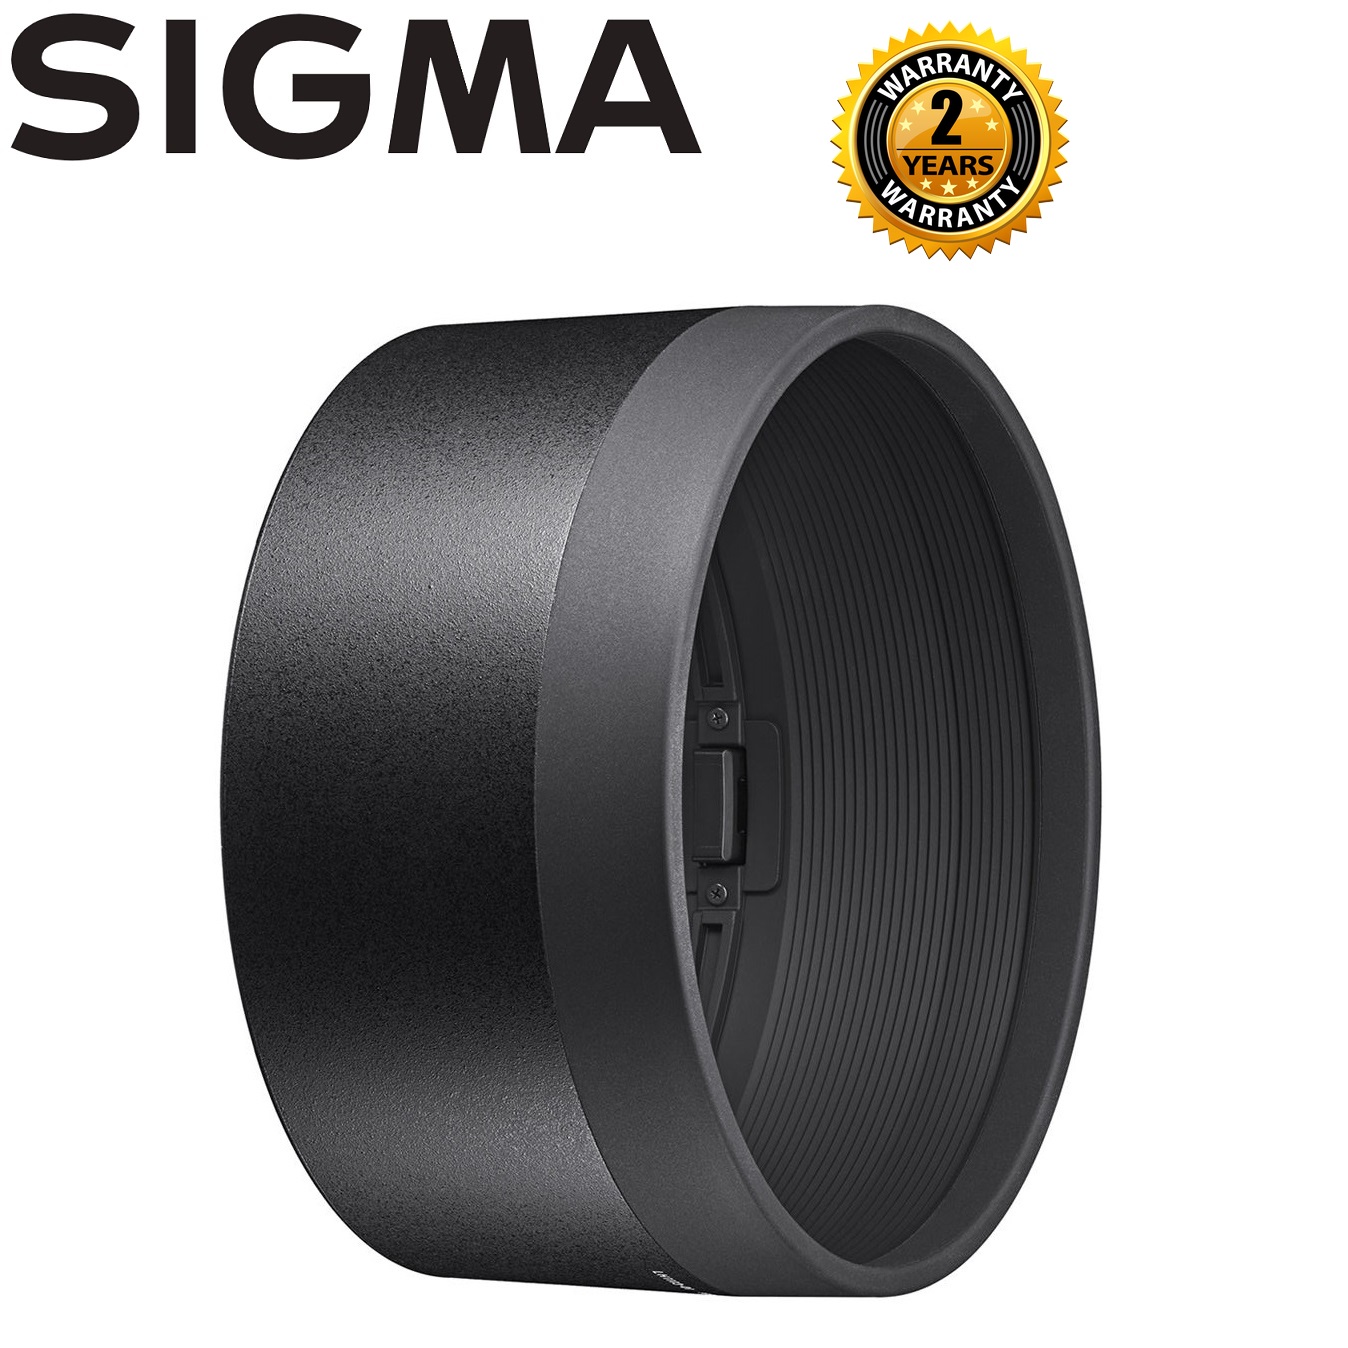 Sigma LH1113-01 Lens Hood For 105mm f/1.4 Art Lens